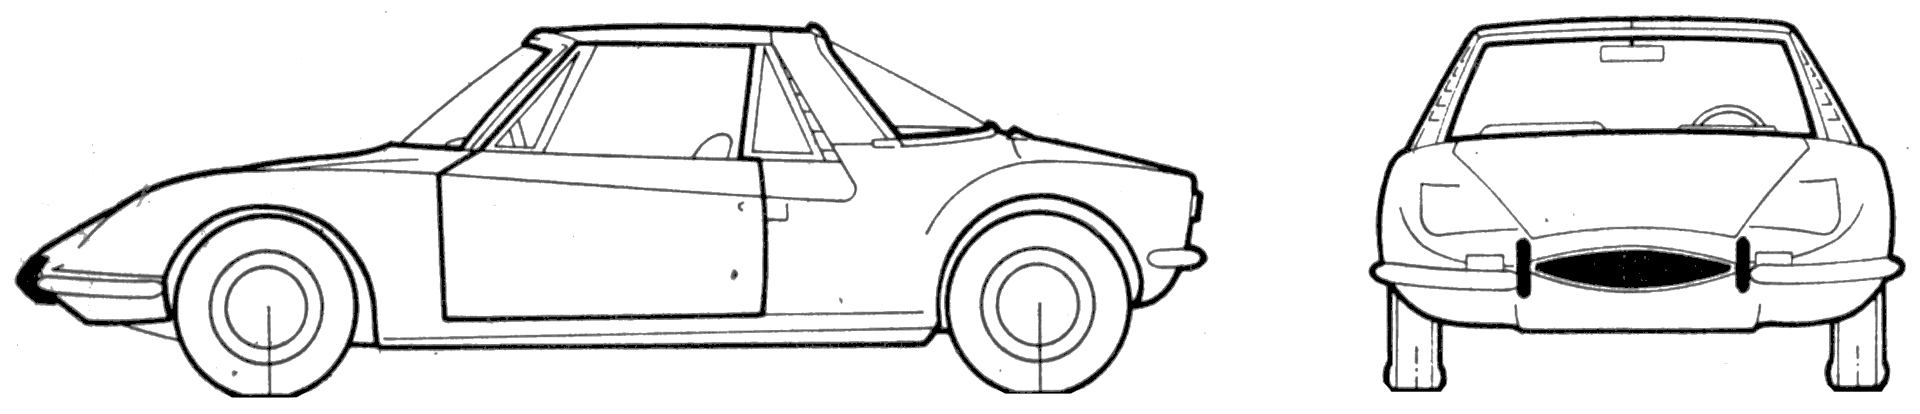 小汽车 Matra 530